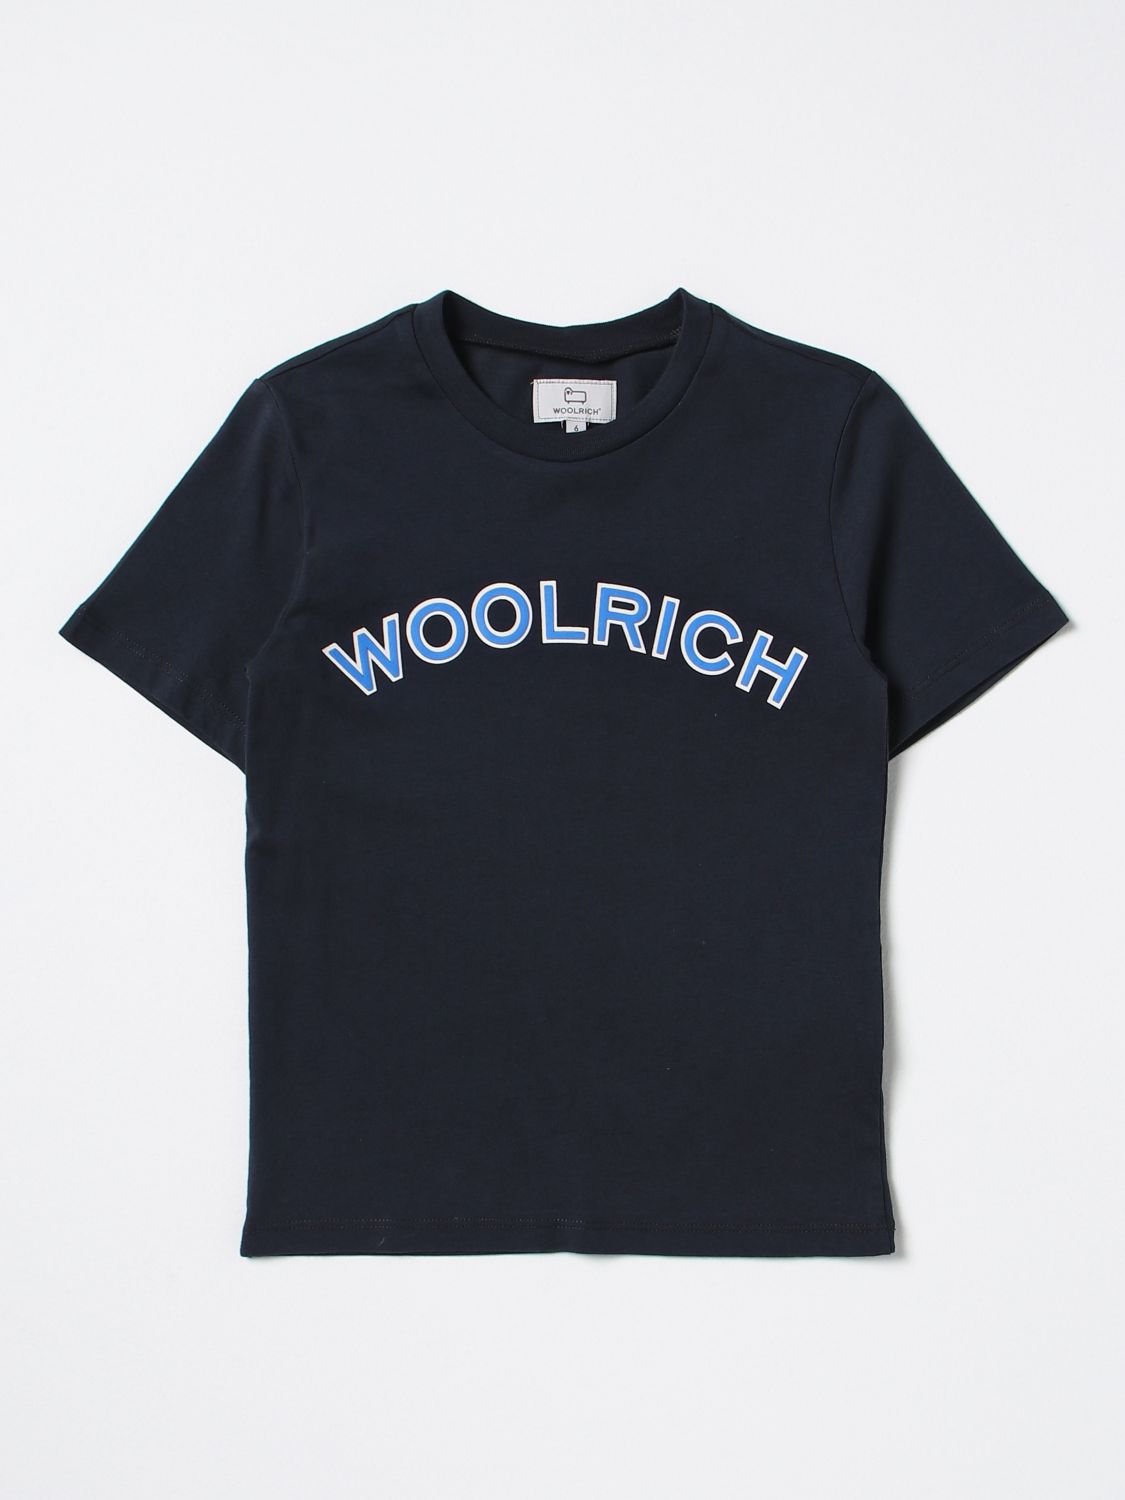 WOOLRICH T-SHIRT WOOLRICH KIDS COLOR BLUE,379233009